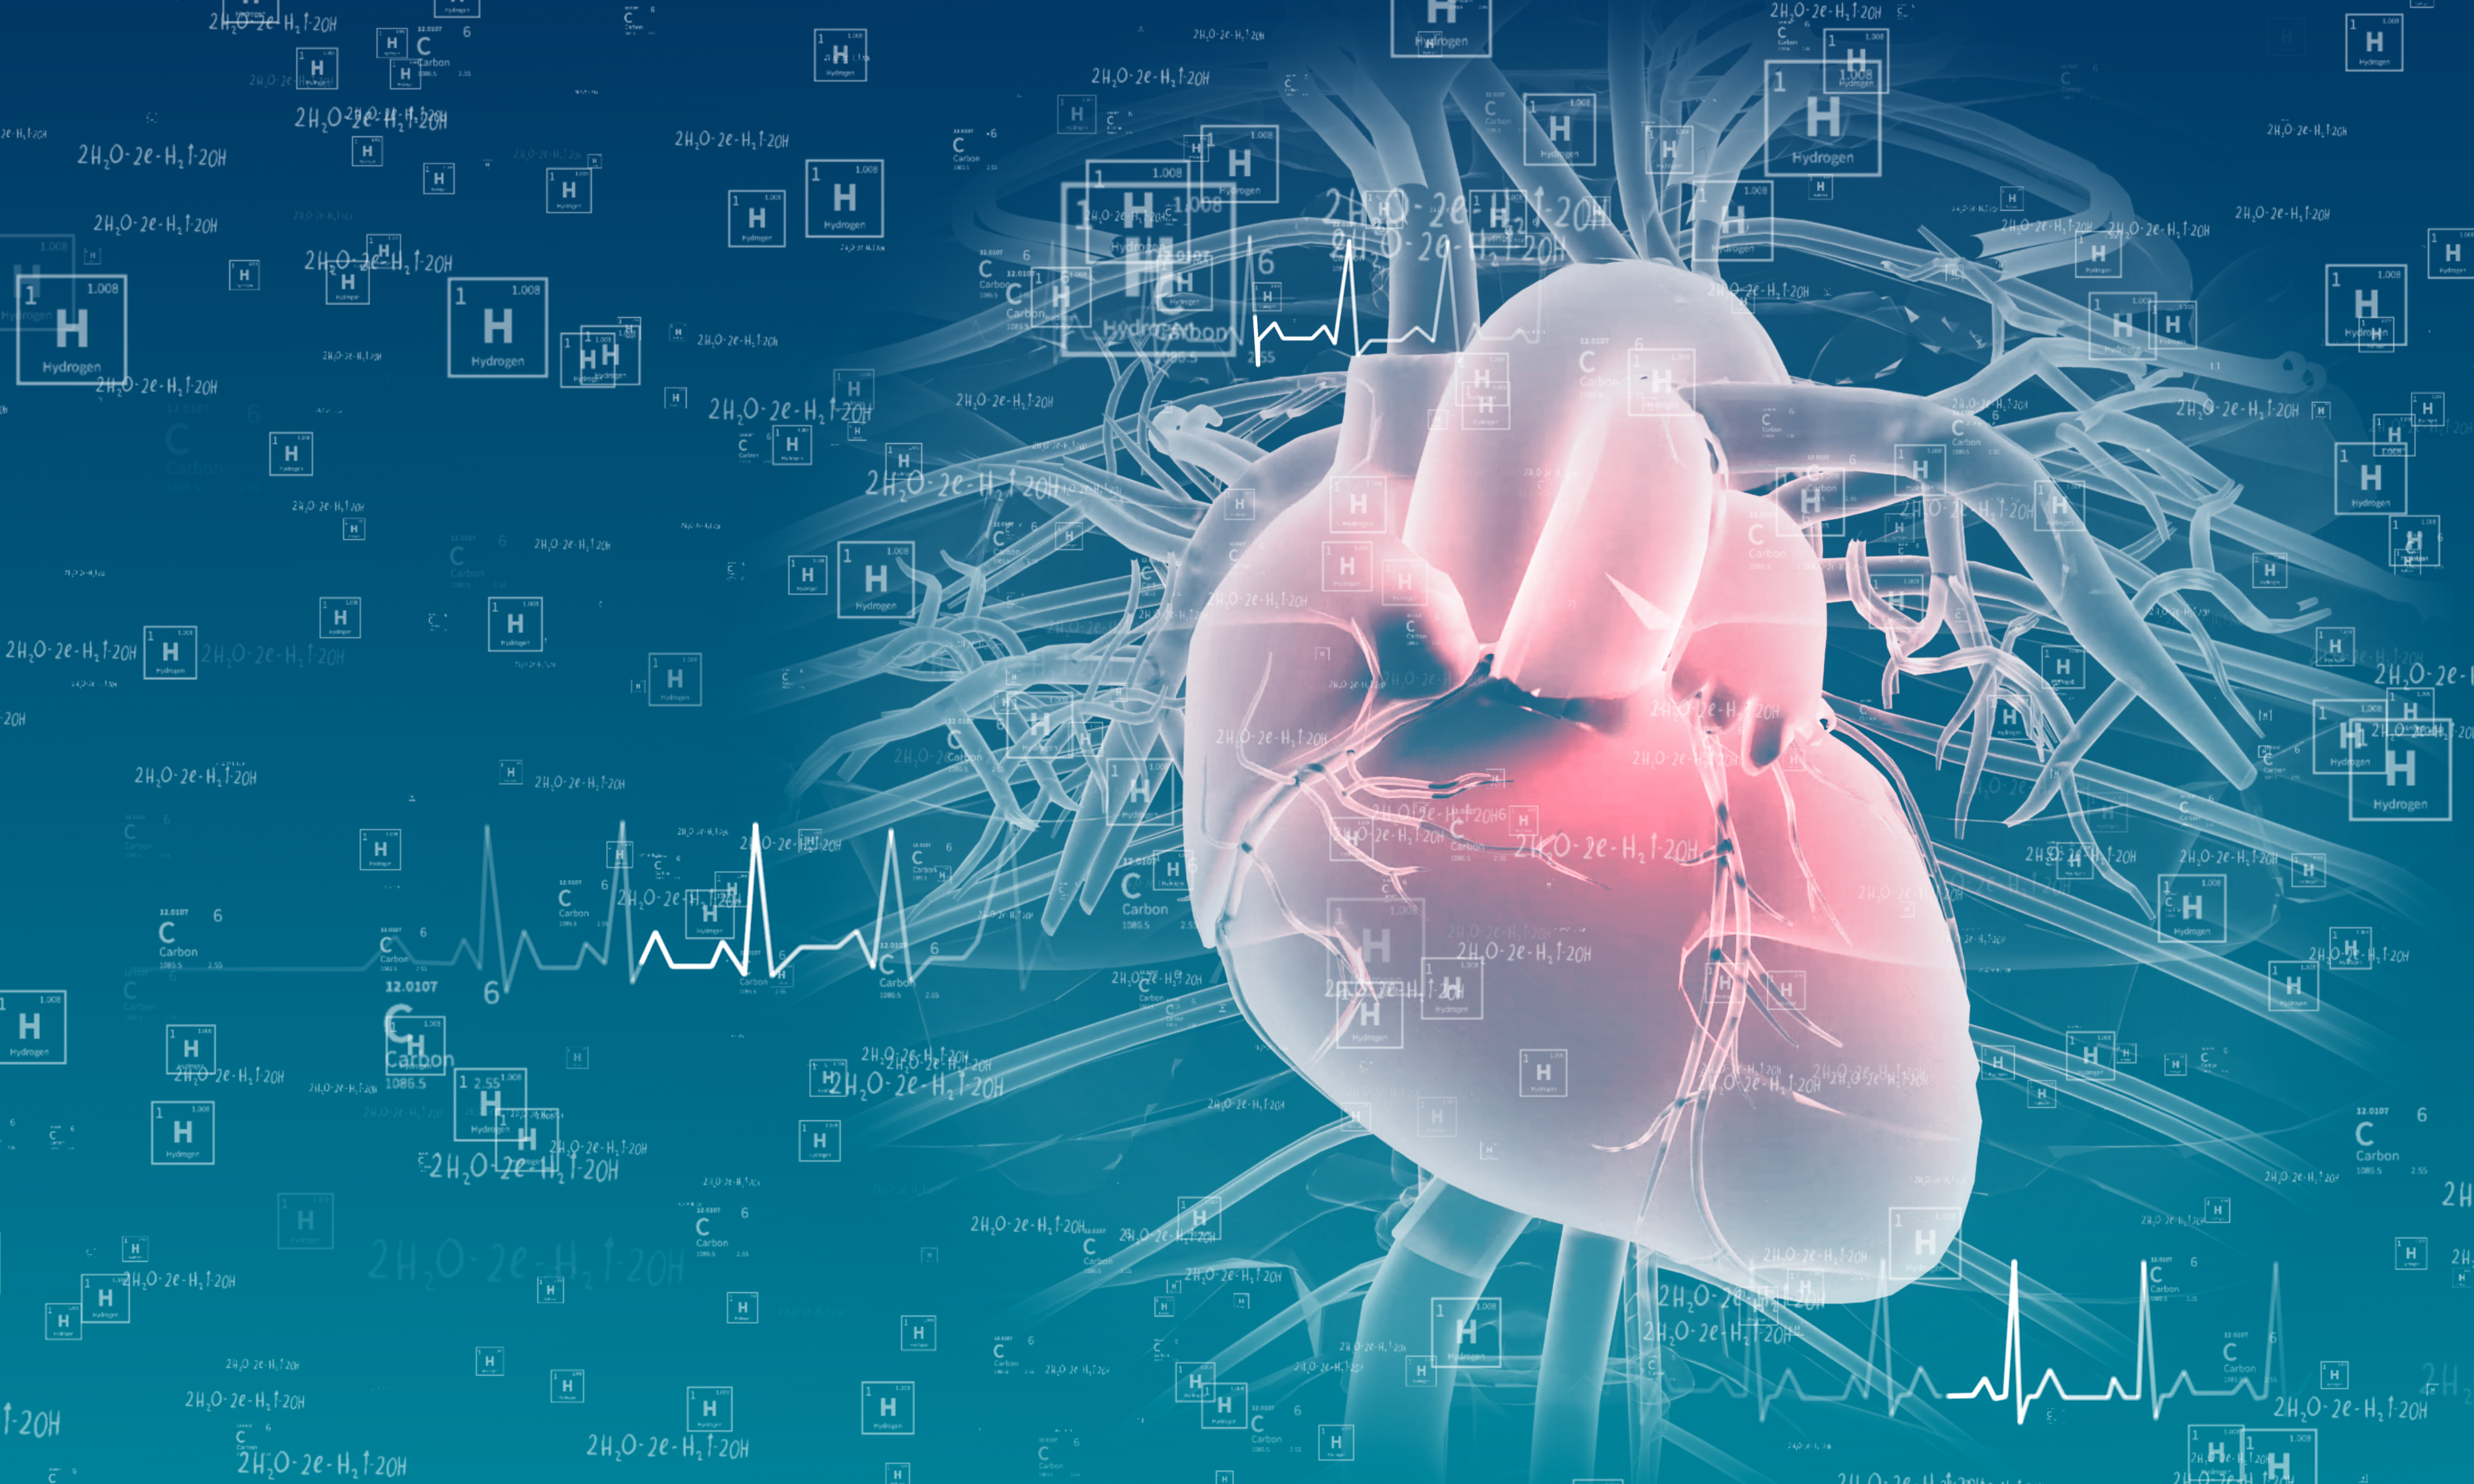 Arterias coronarias y funcionamiento cardiaco | Blogs Quirónsalud